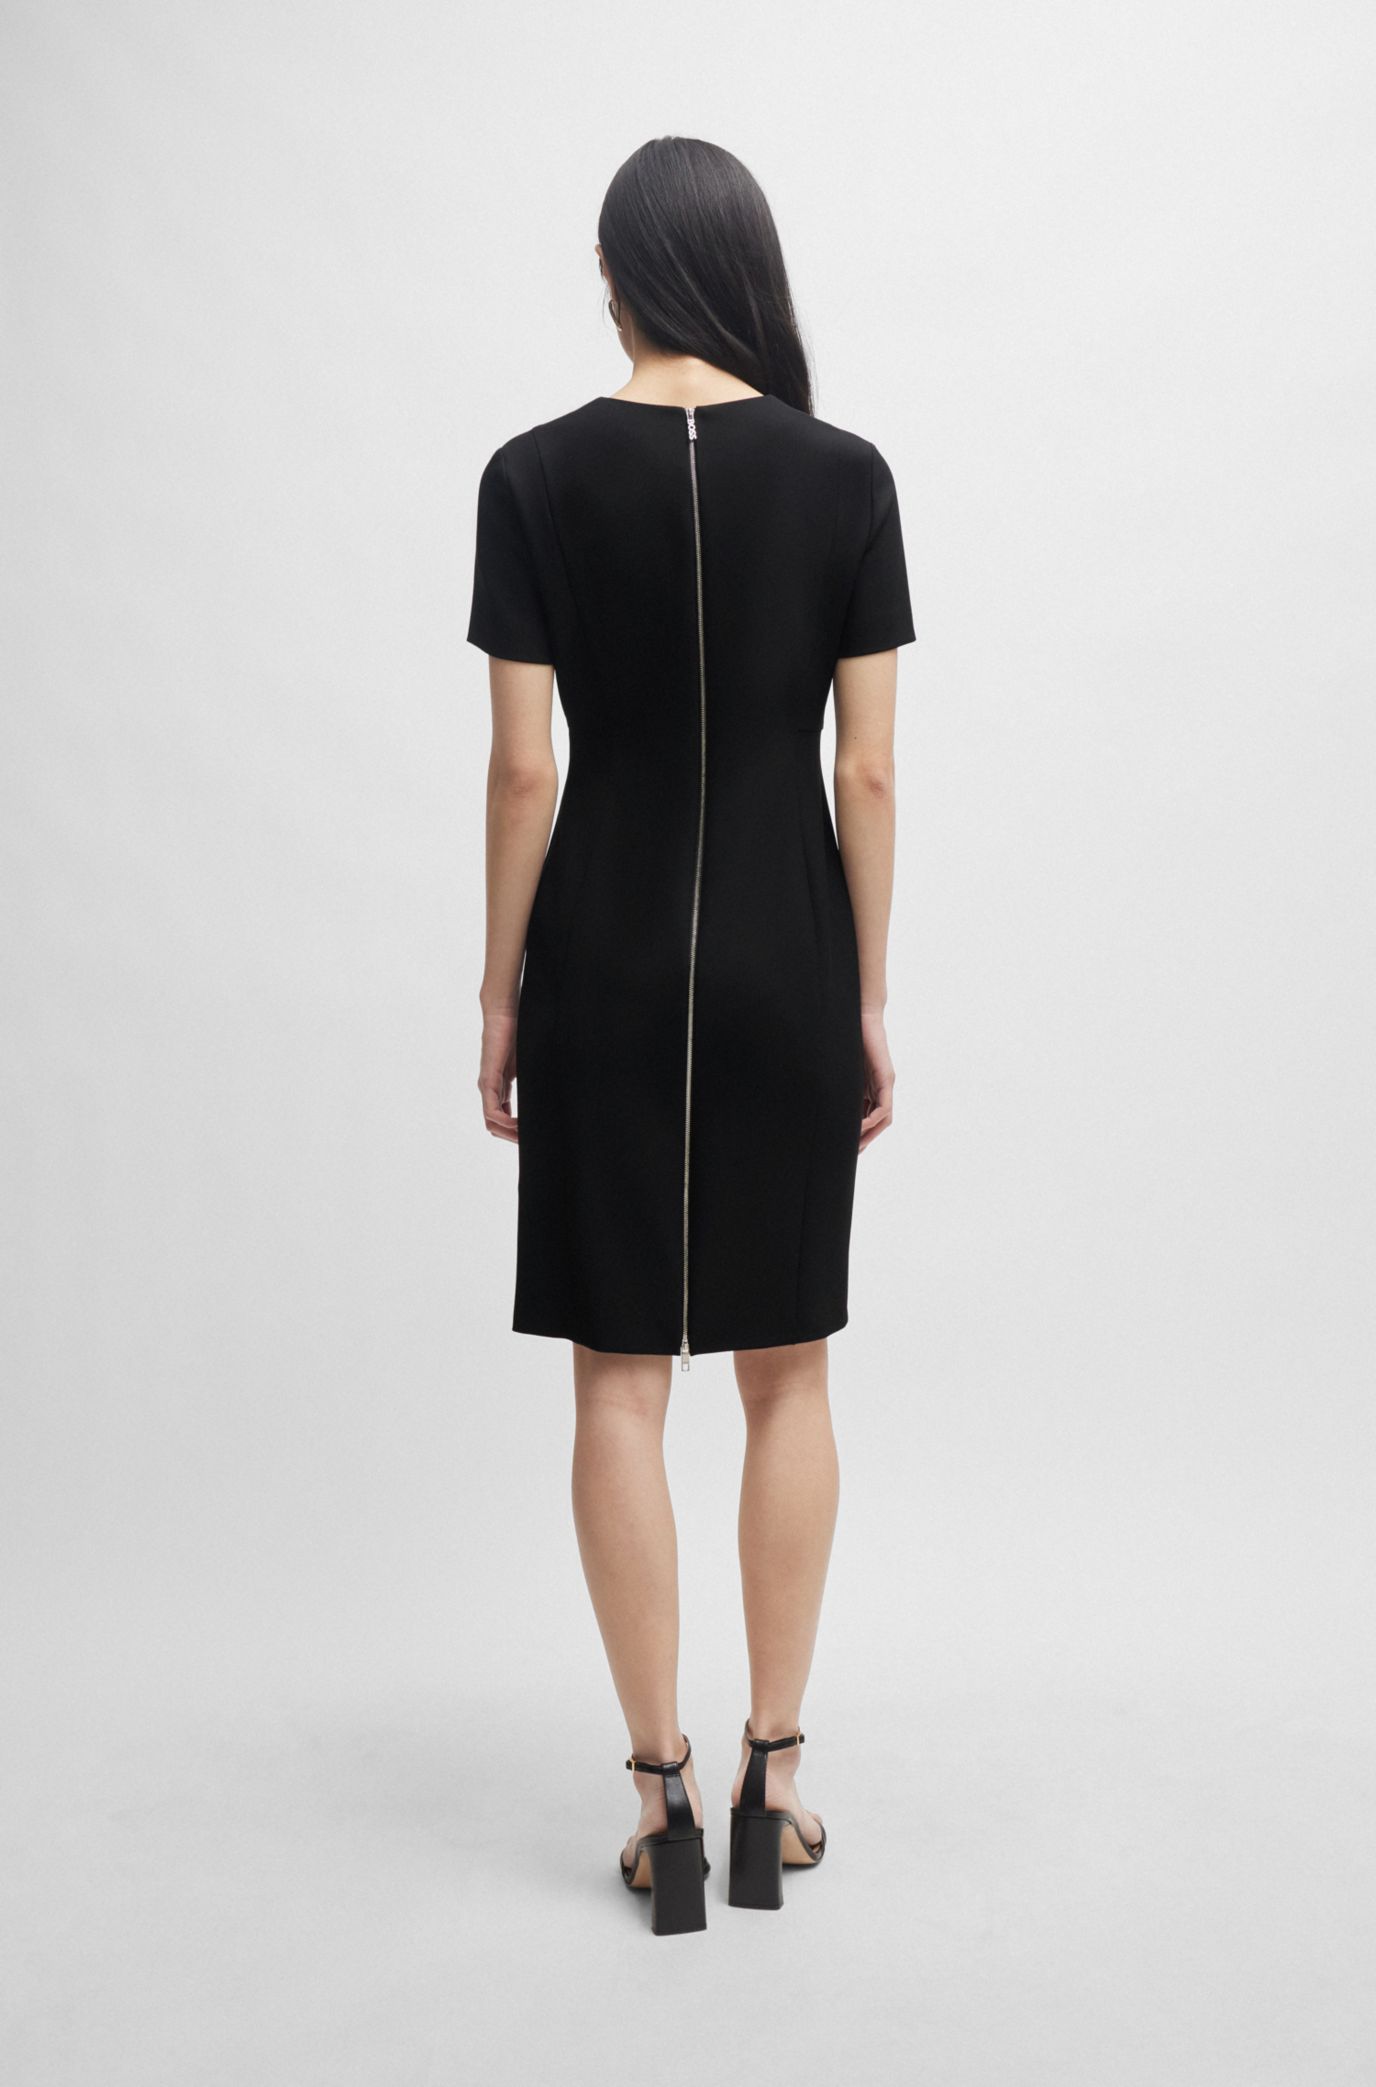 40 petites robes noires - Femme Actuelle